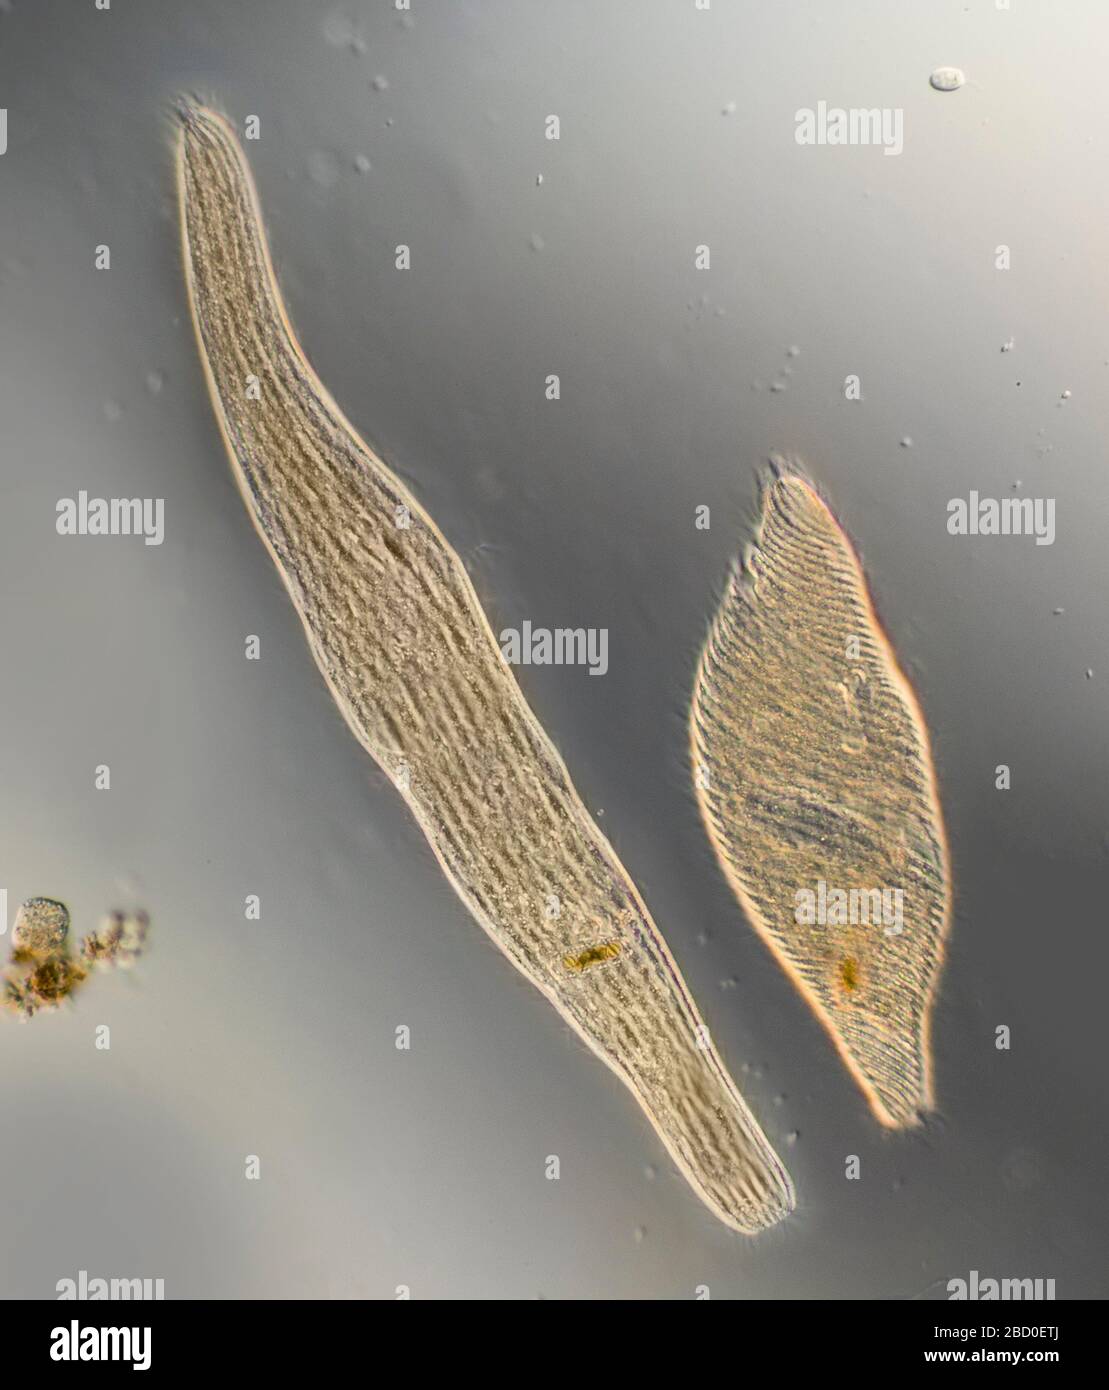 Spirostomum protiste de ciliate libre-vivant, développé et contacté (se rétracte si dérangé) Banque D'Images